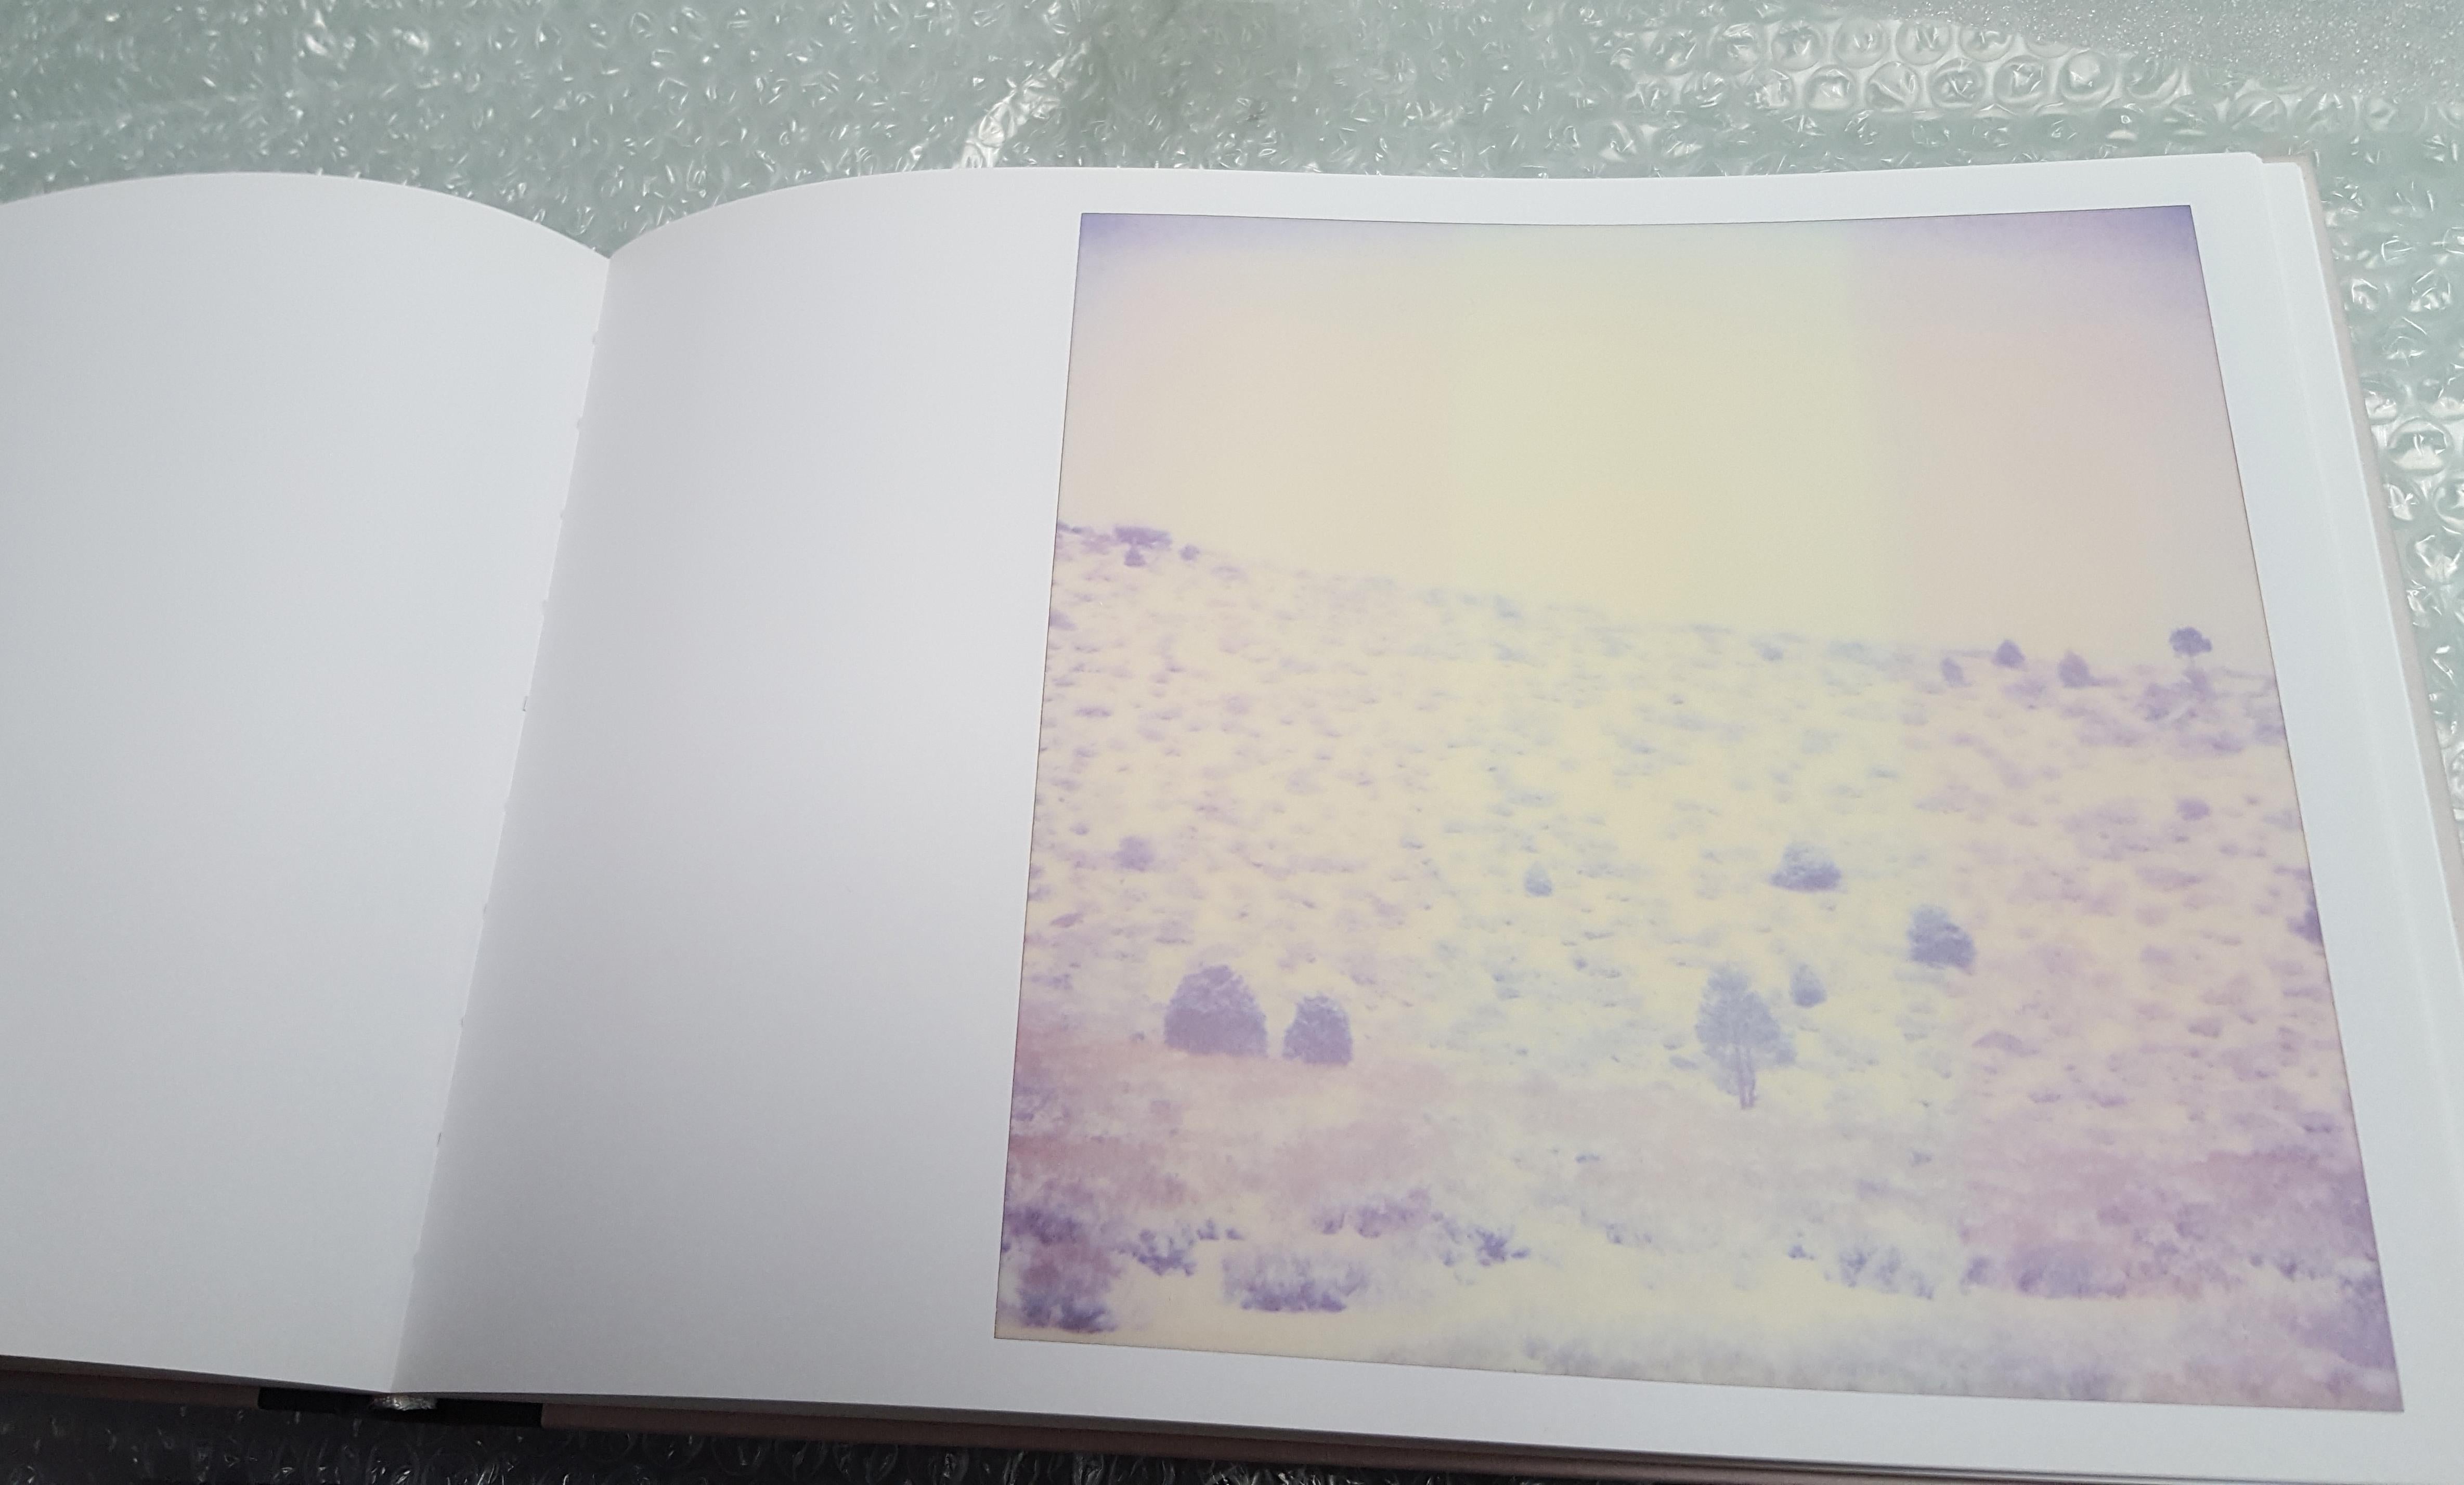 Purple Valley (Wastelands) - Contemporary, Landschaft, Polaroid, Analog, montiert – Photograph von Stefanie Schneider